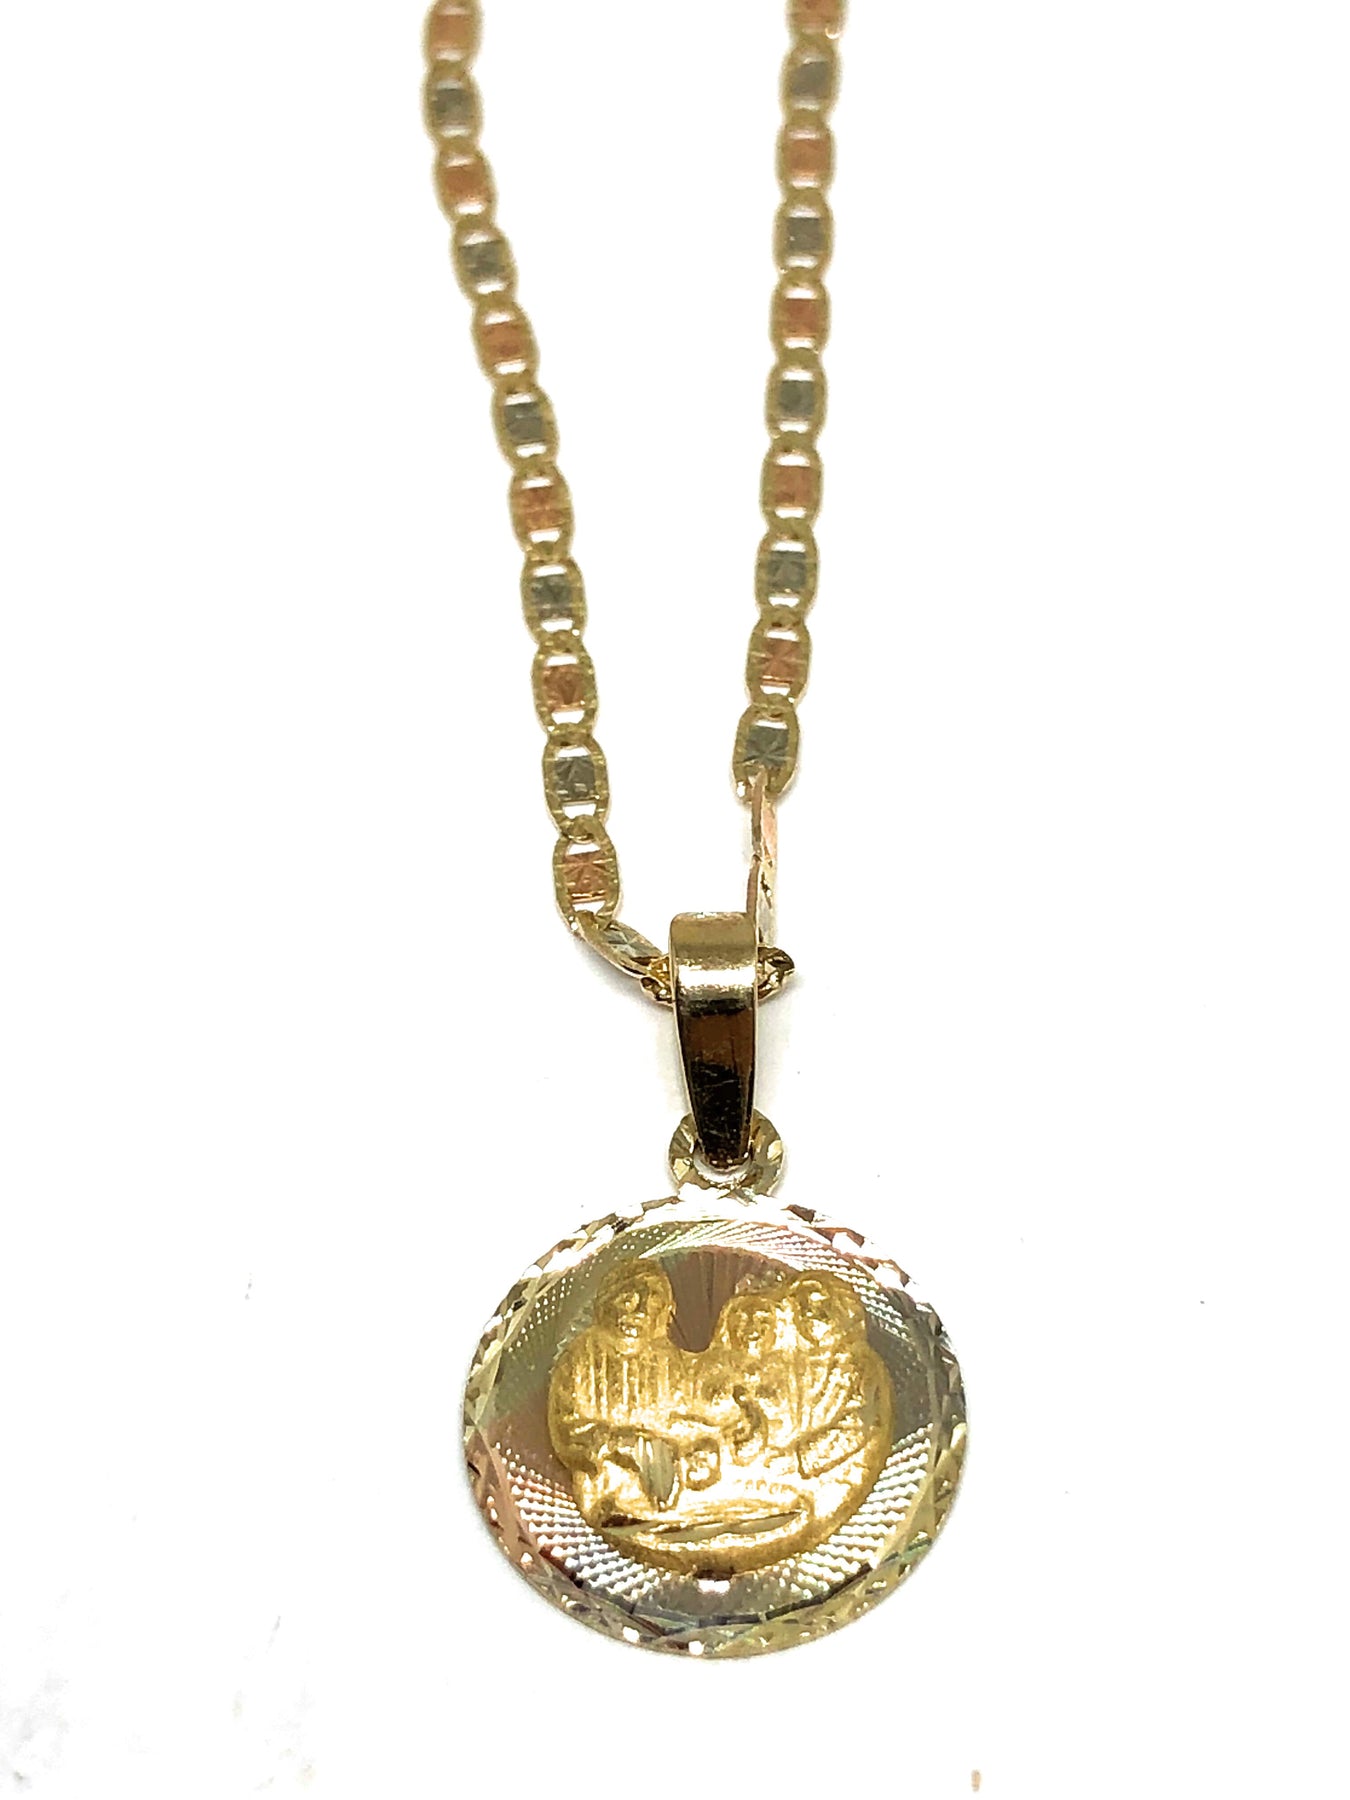 Guerrero Cita exposición 10K medallas de oro puro, de baptism bautizo para niños, de Valentina. –  Fran & Co Jewelry